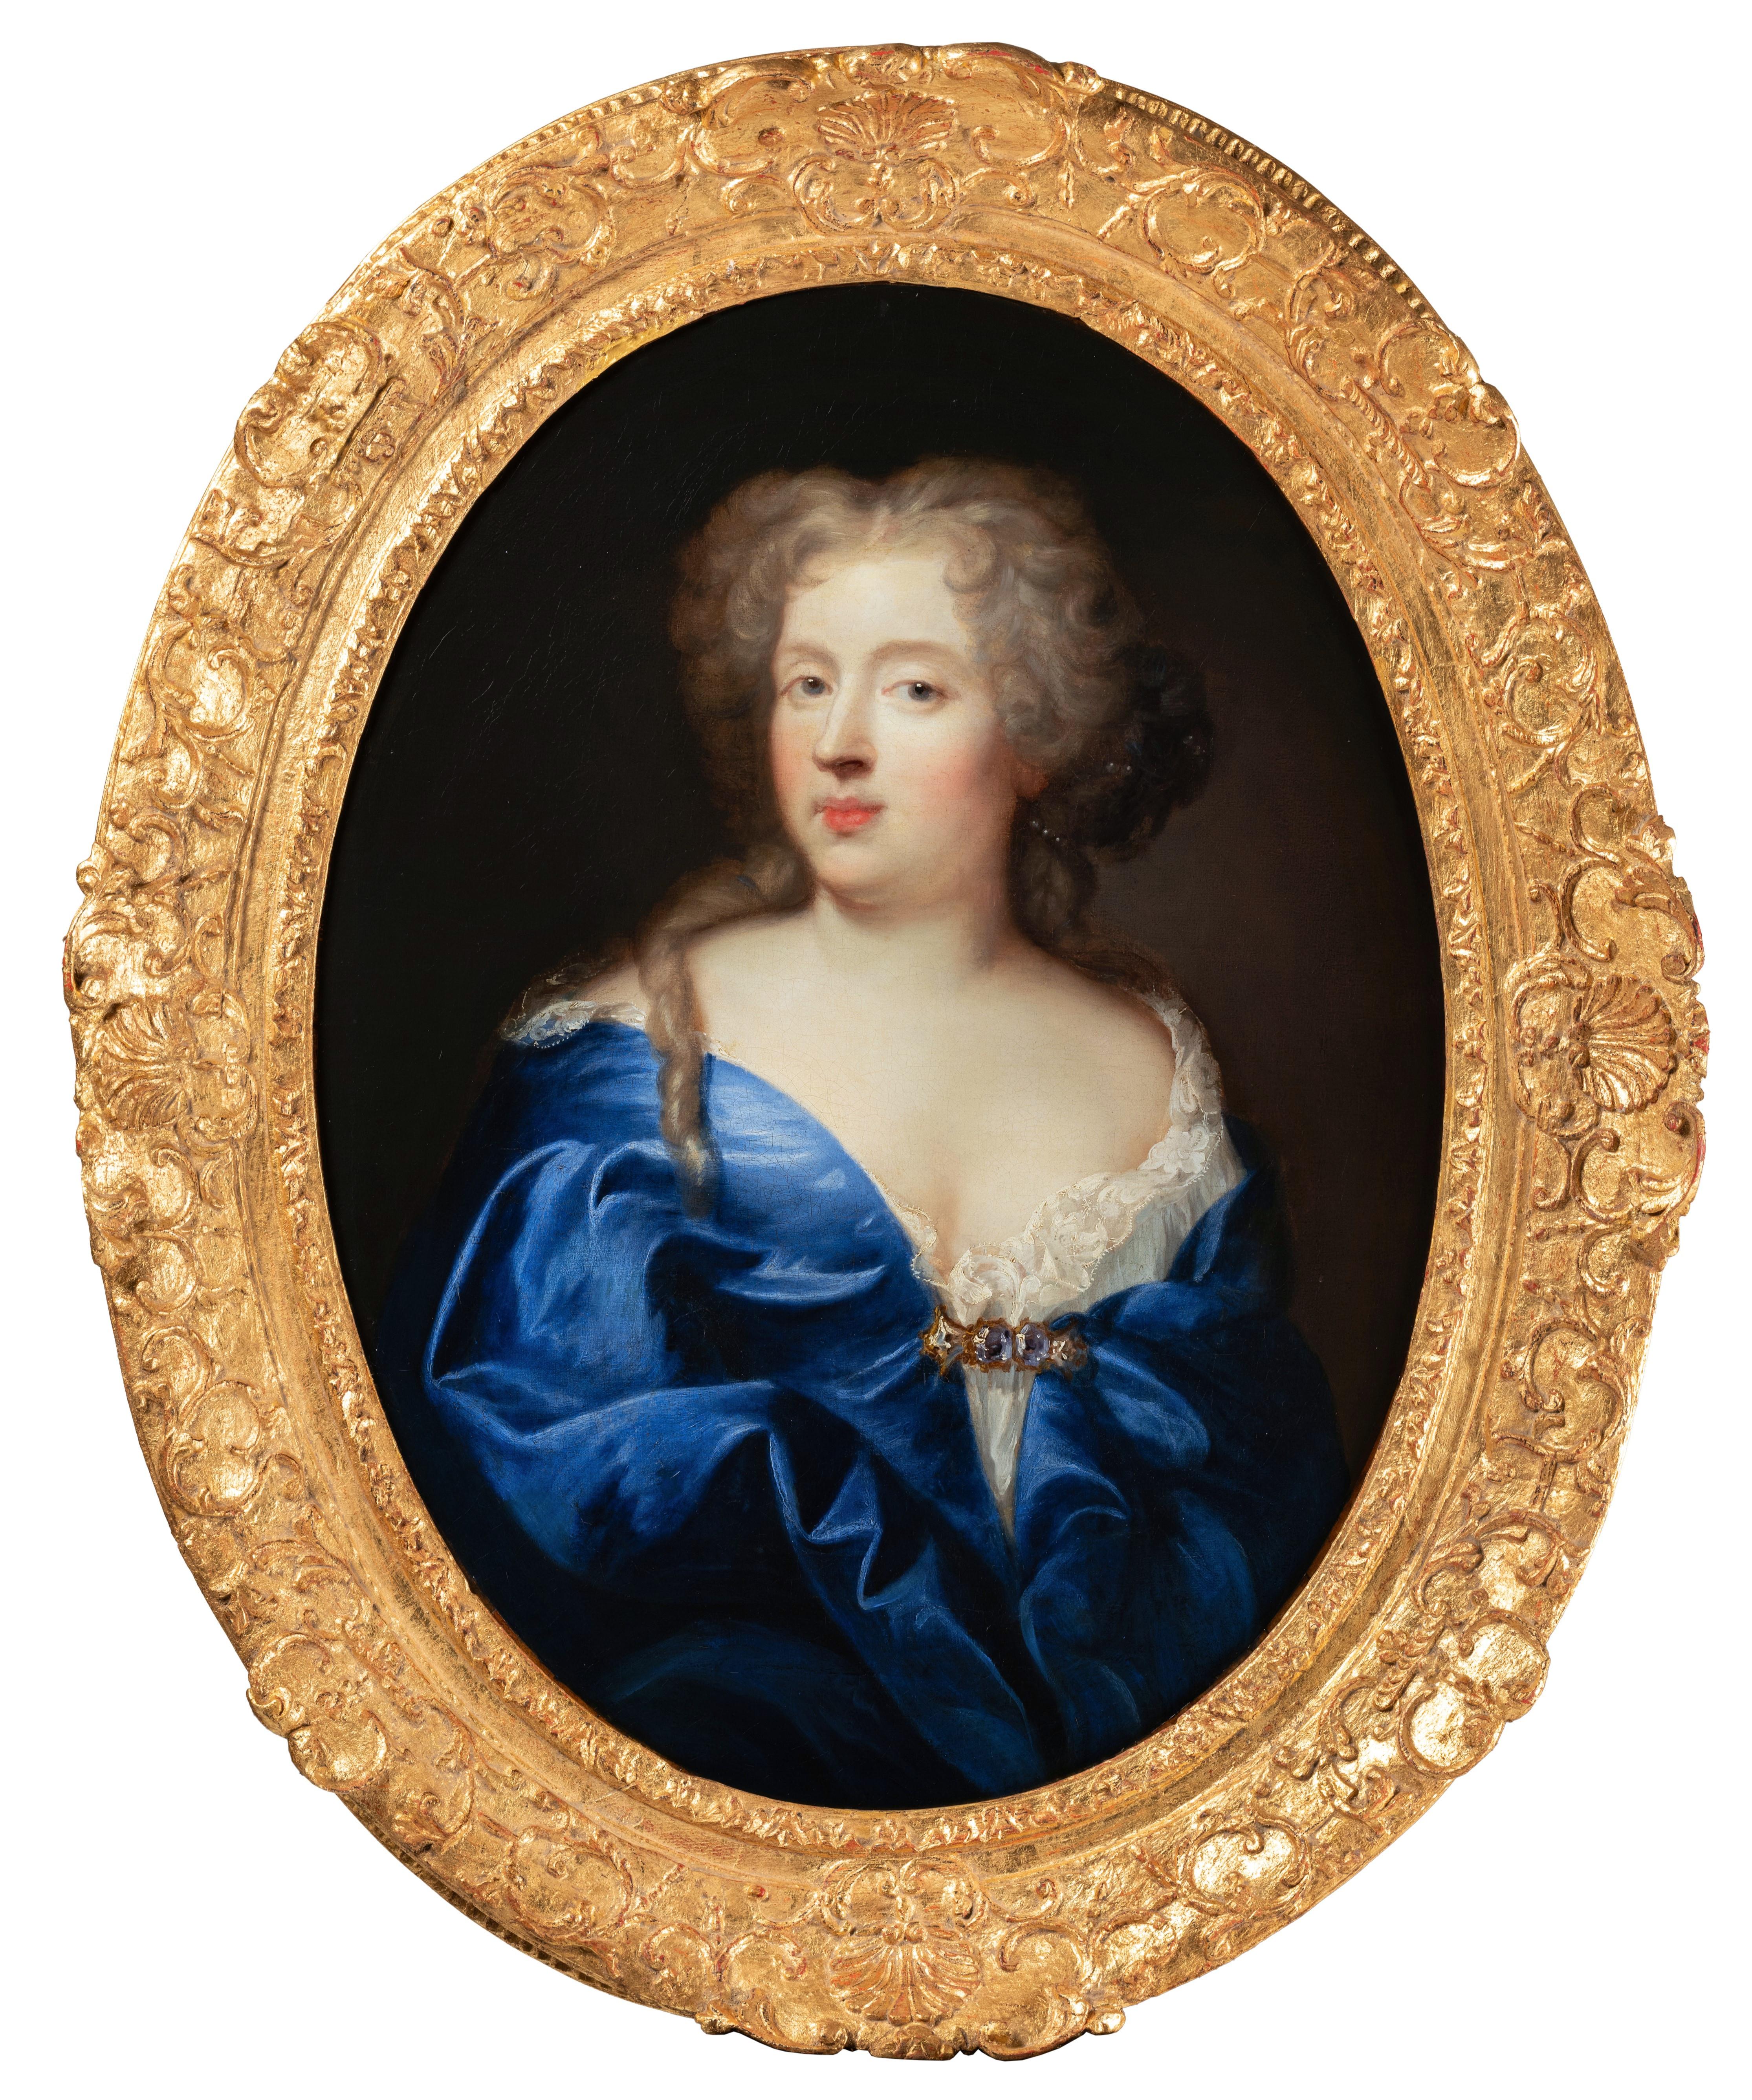 Pierre Mignard Portrait Painting - French, 17th c. Portrait of Marquise de Montespan, King Louis XIV's lover